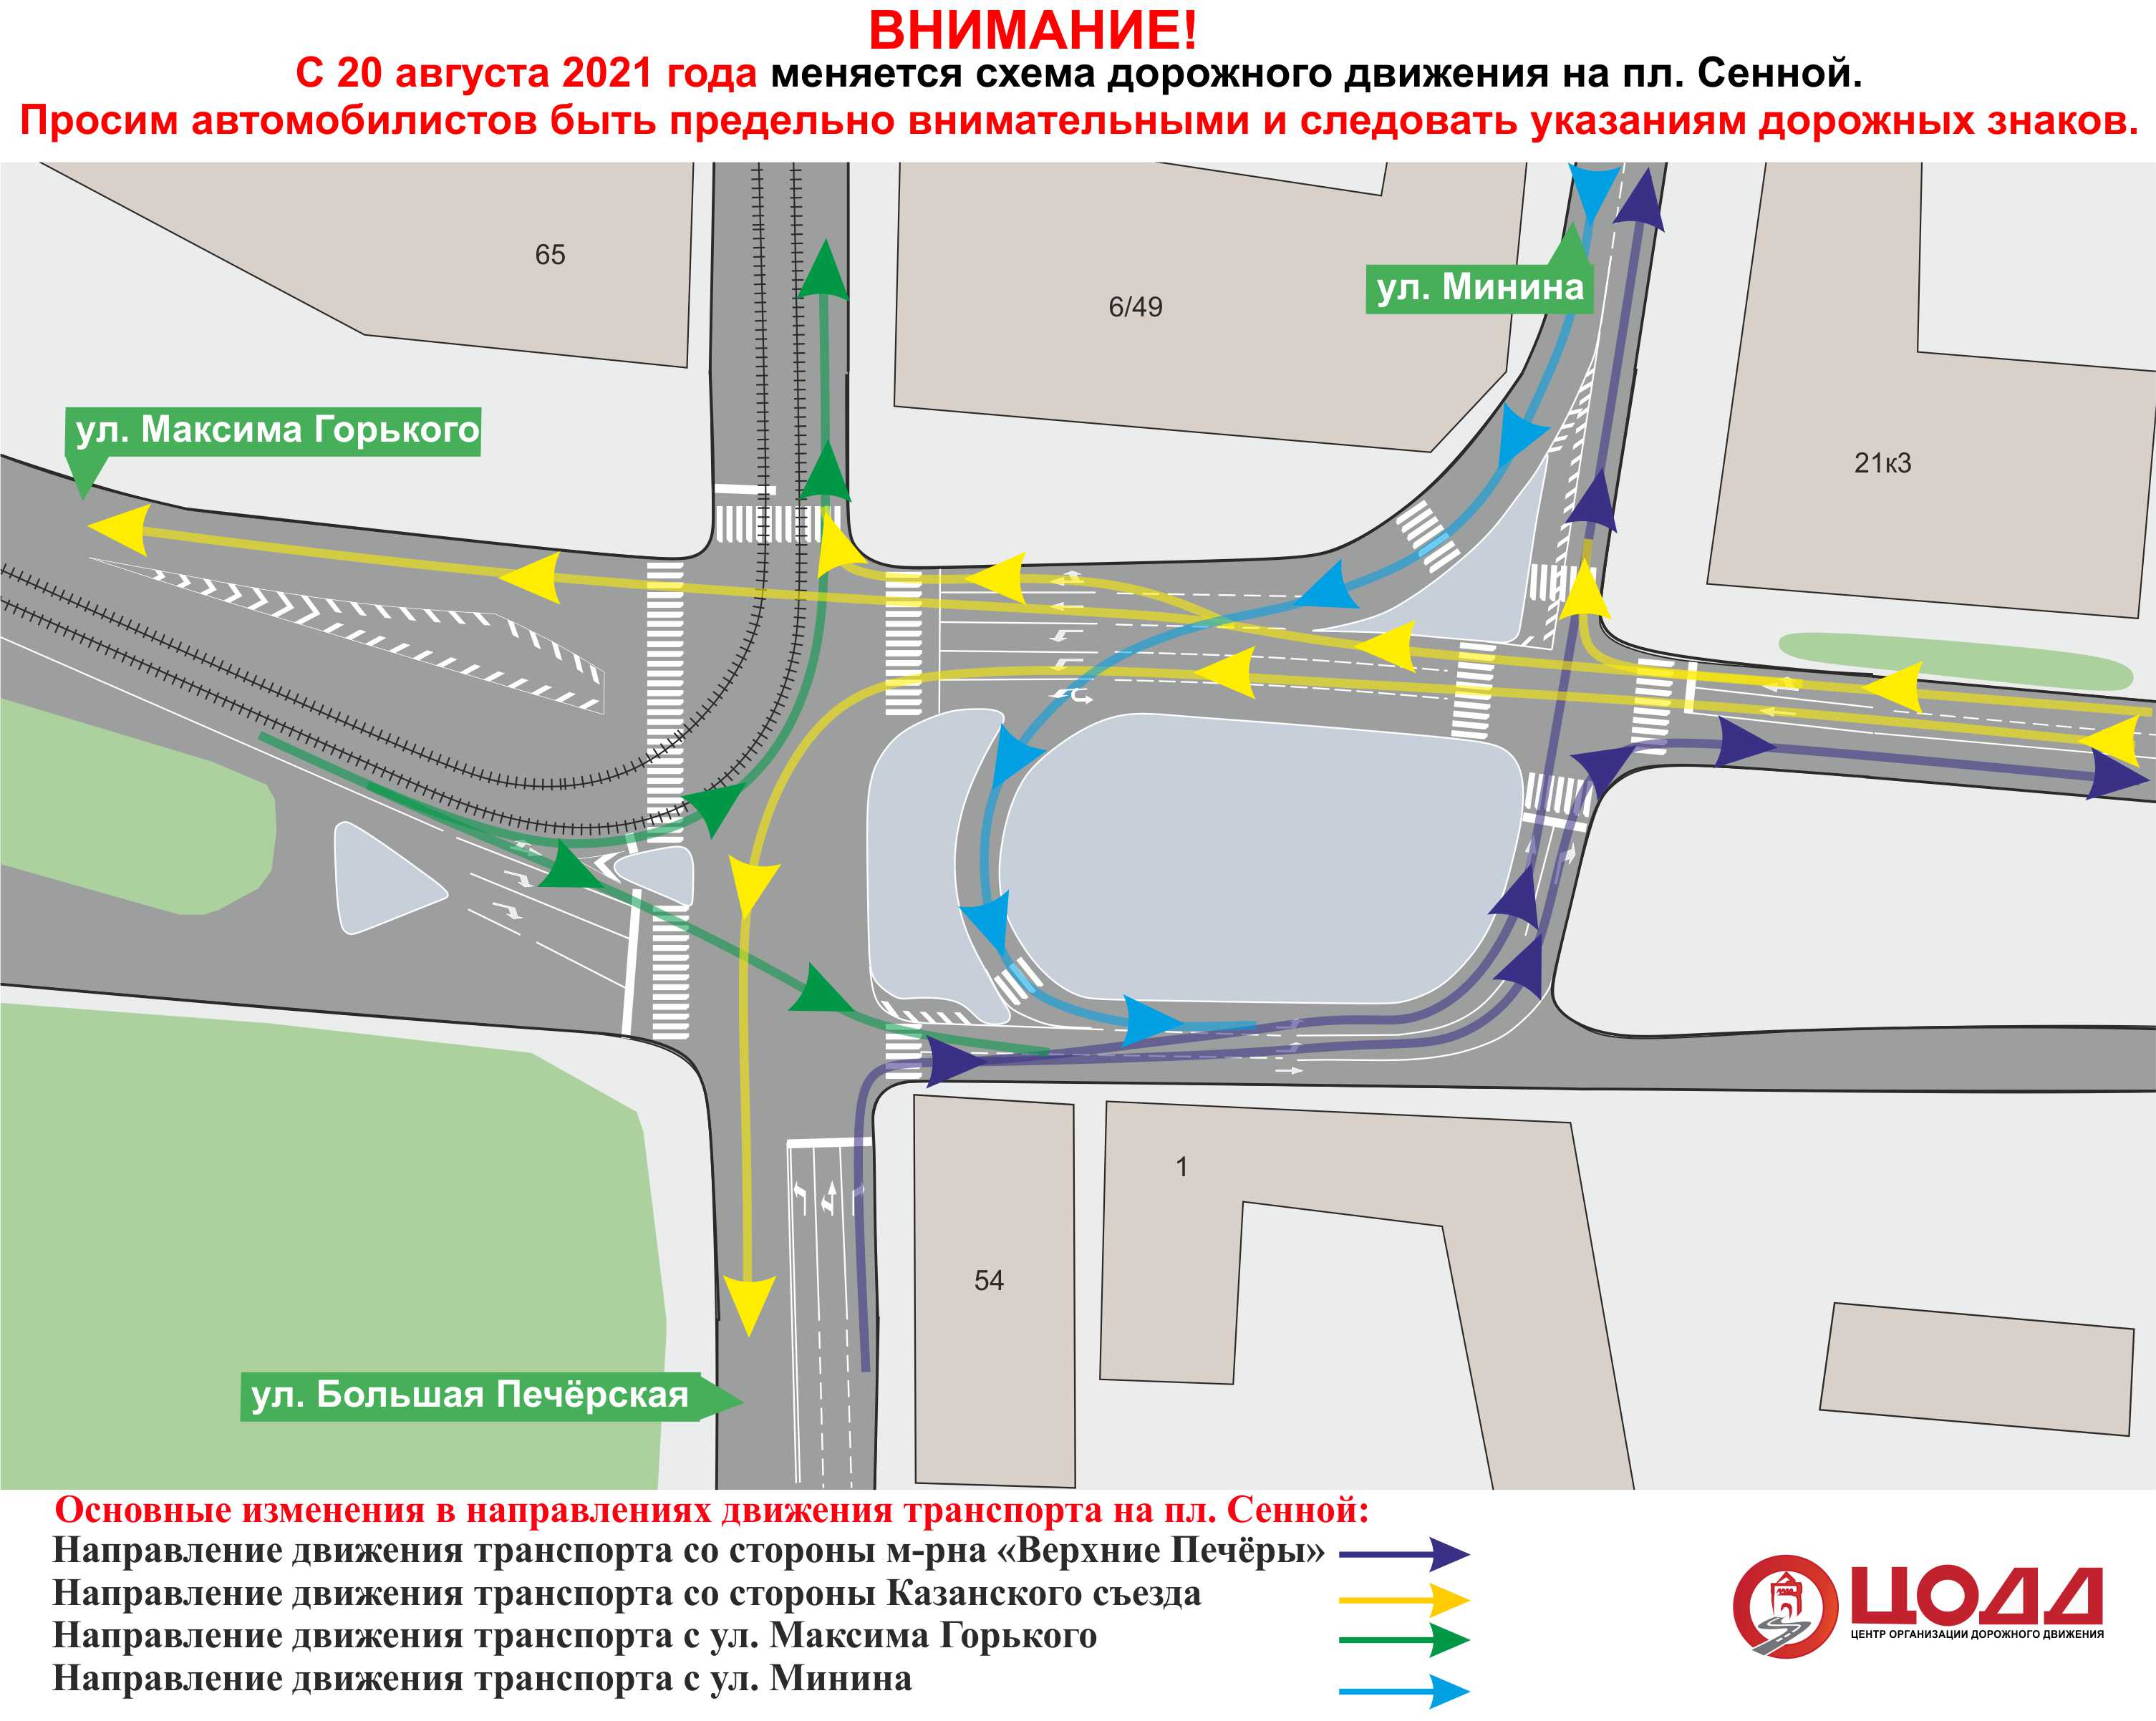 Изменилась схема дорожного движения на площади Сеннной в Нижнем Новгороде - фото 1